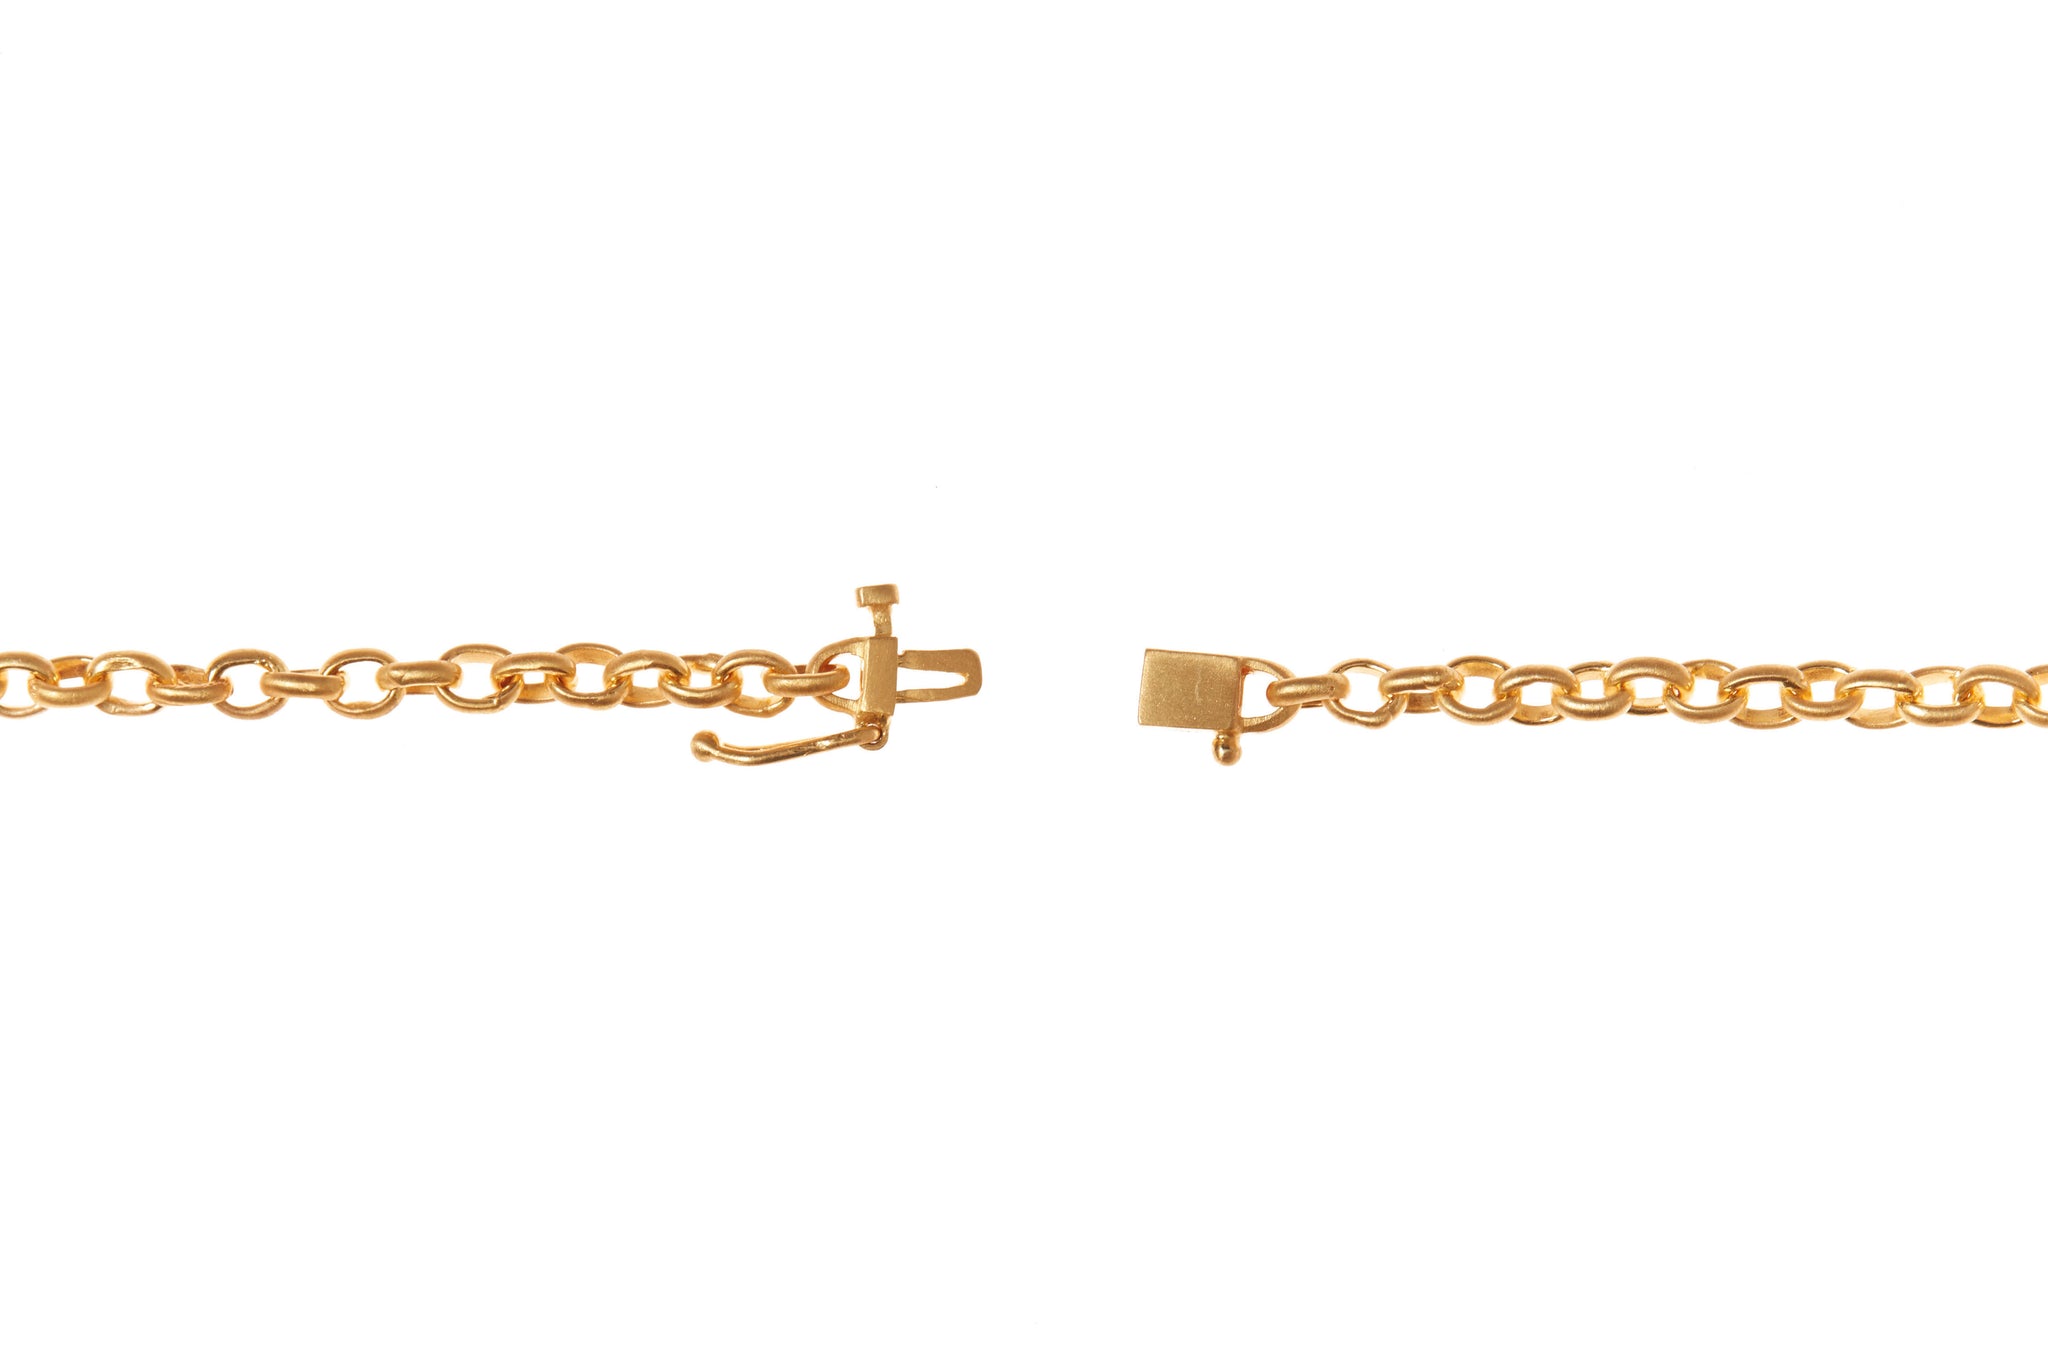 darius jewels fairy chain bracelet 18k yellow gold darius khonsary